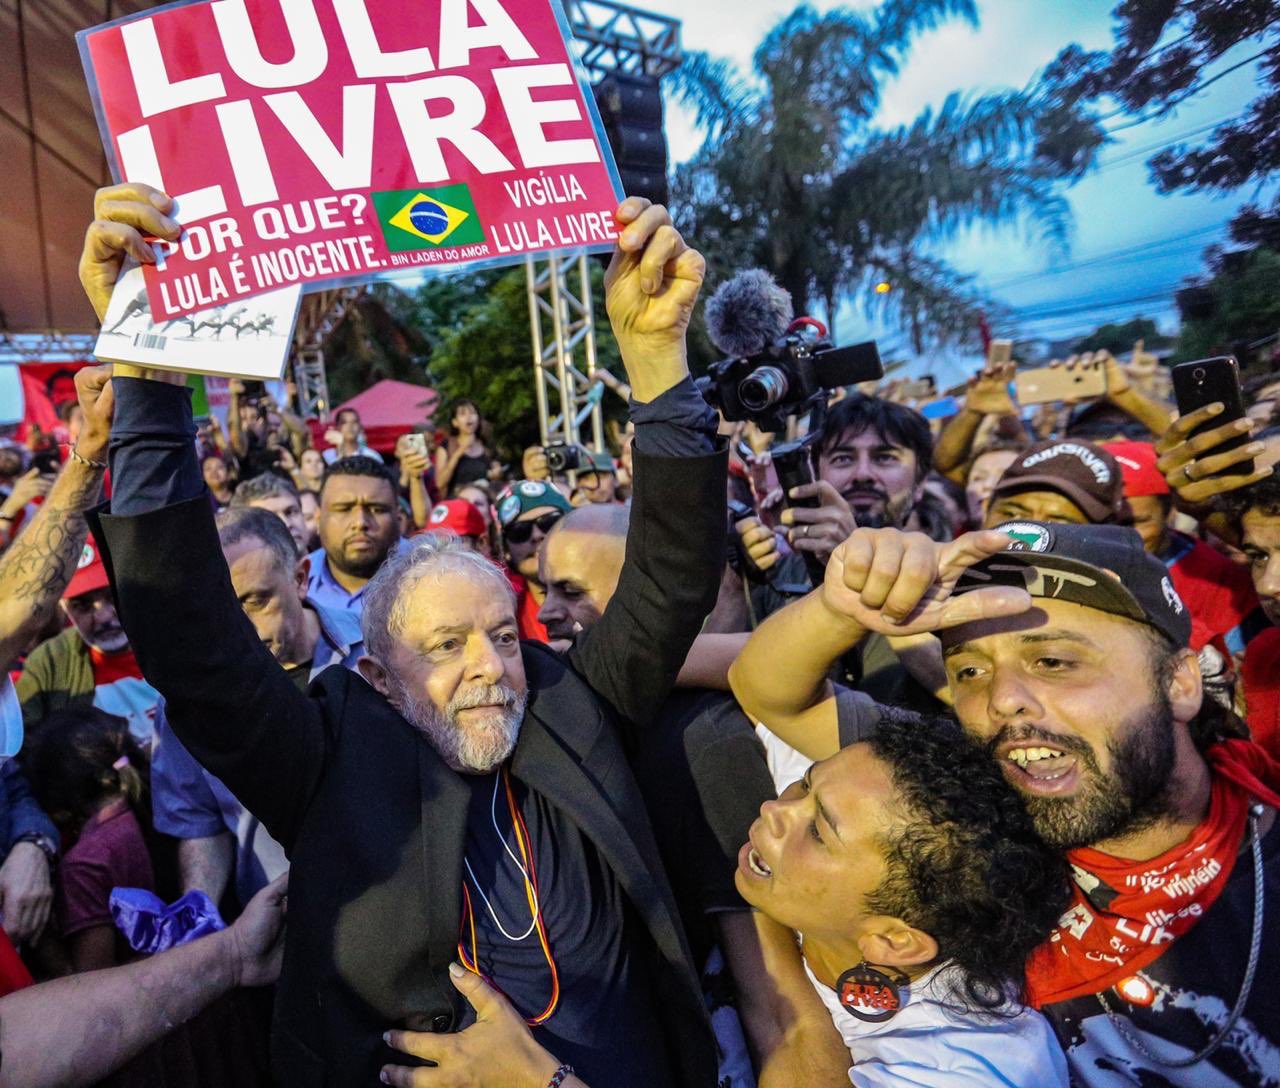 Fotografia de Lula cercado de apoiadores